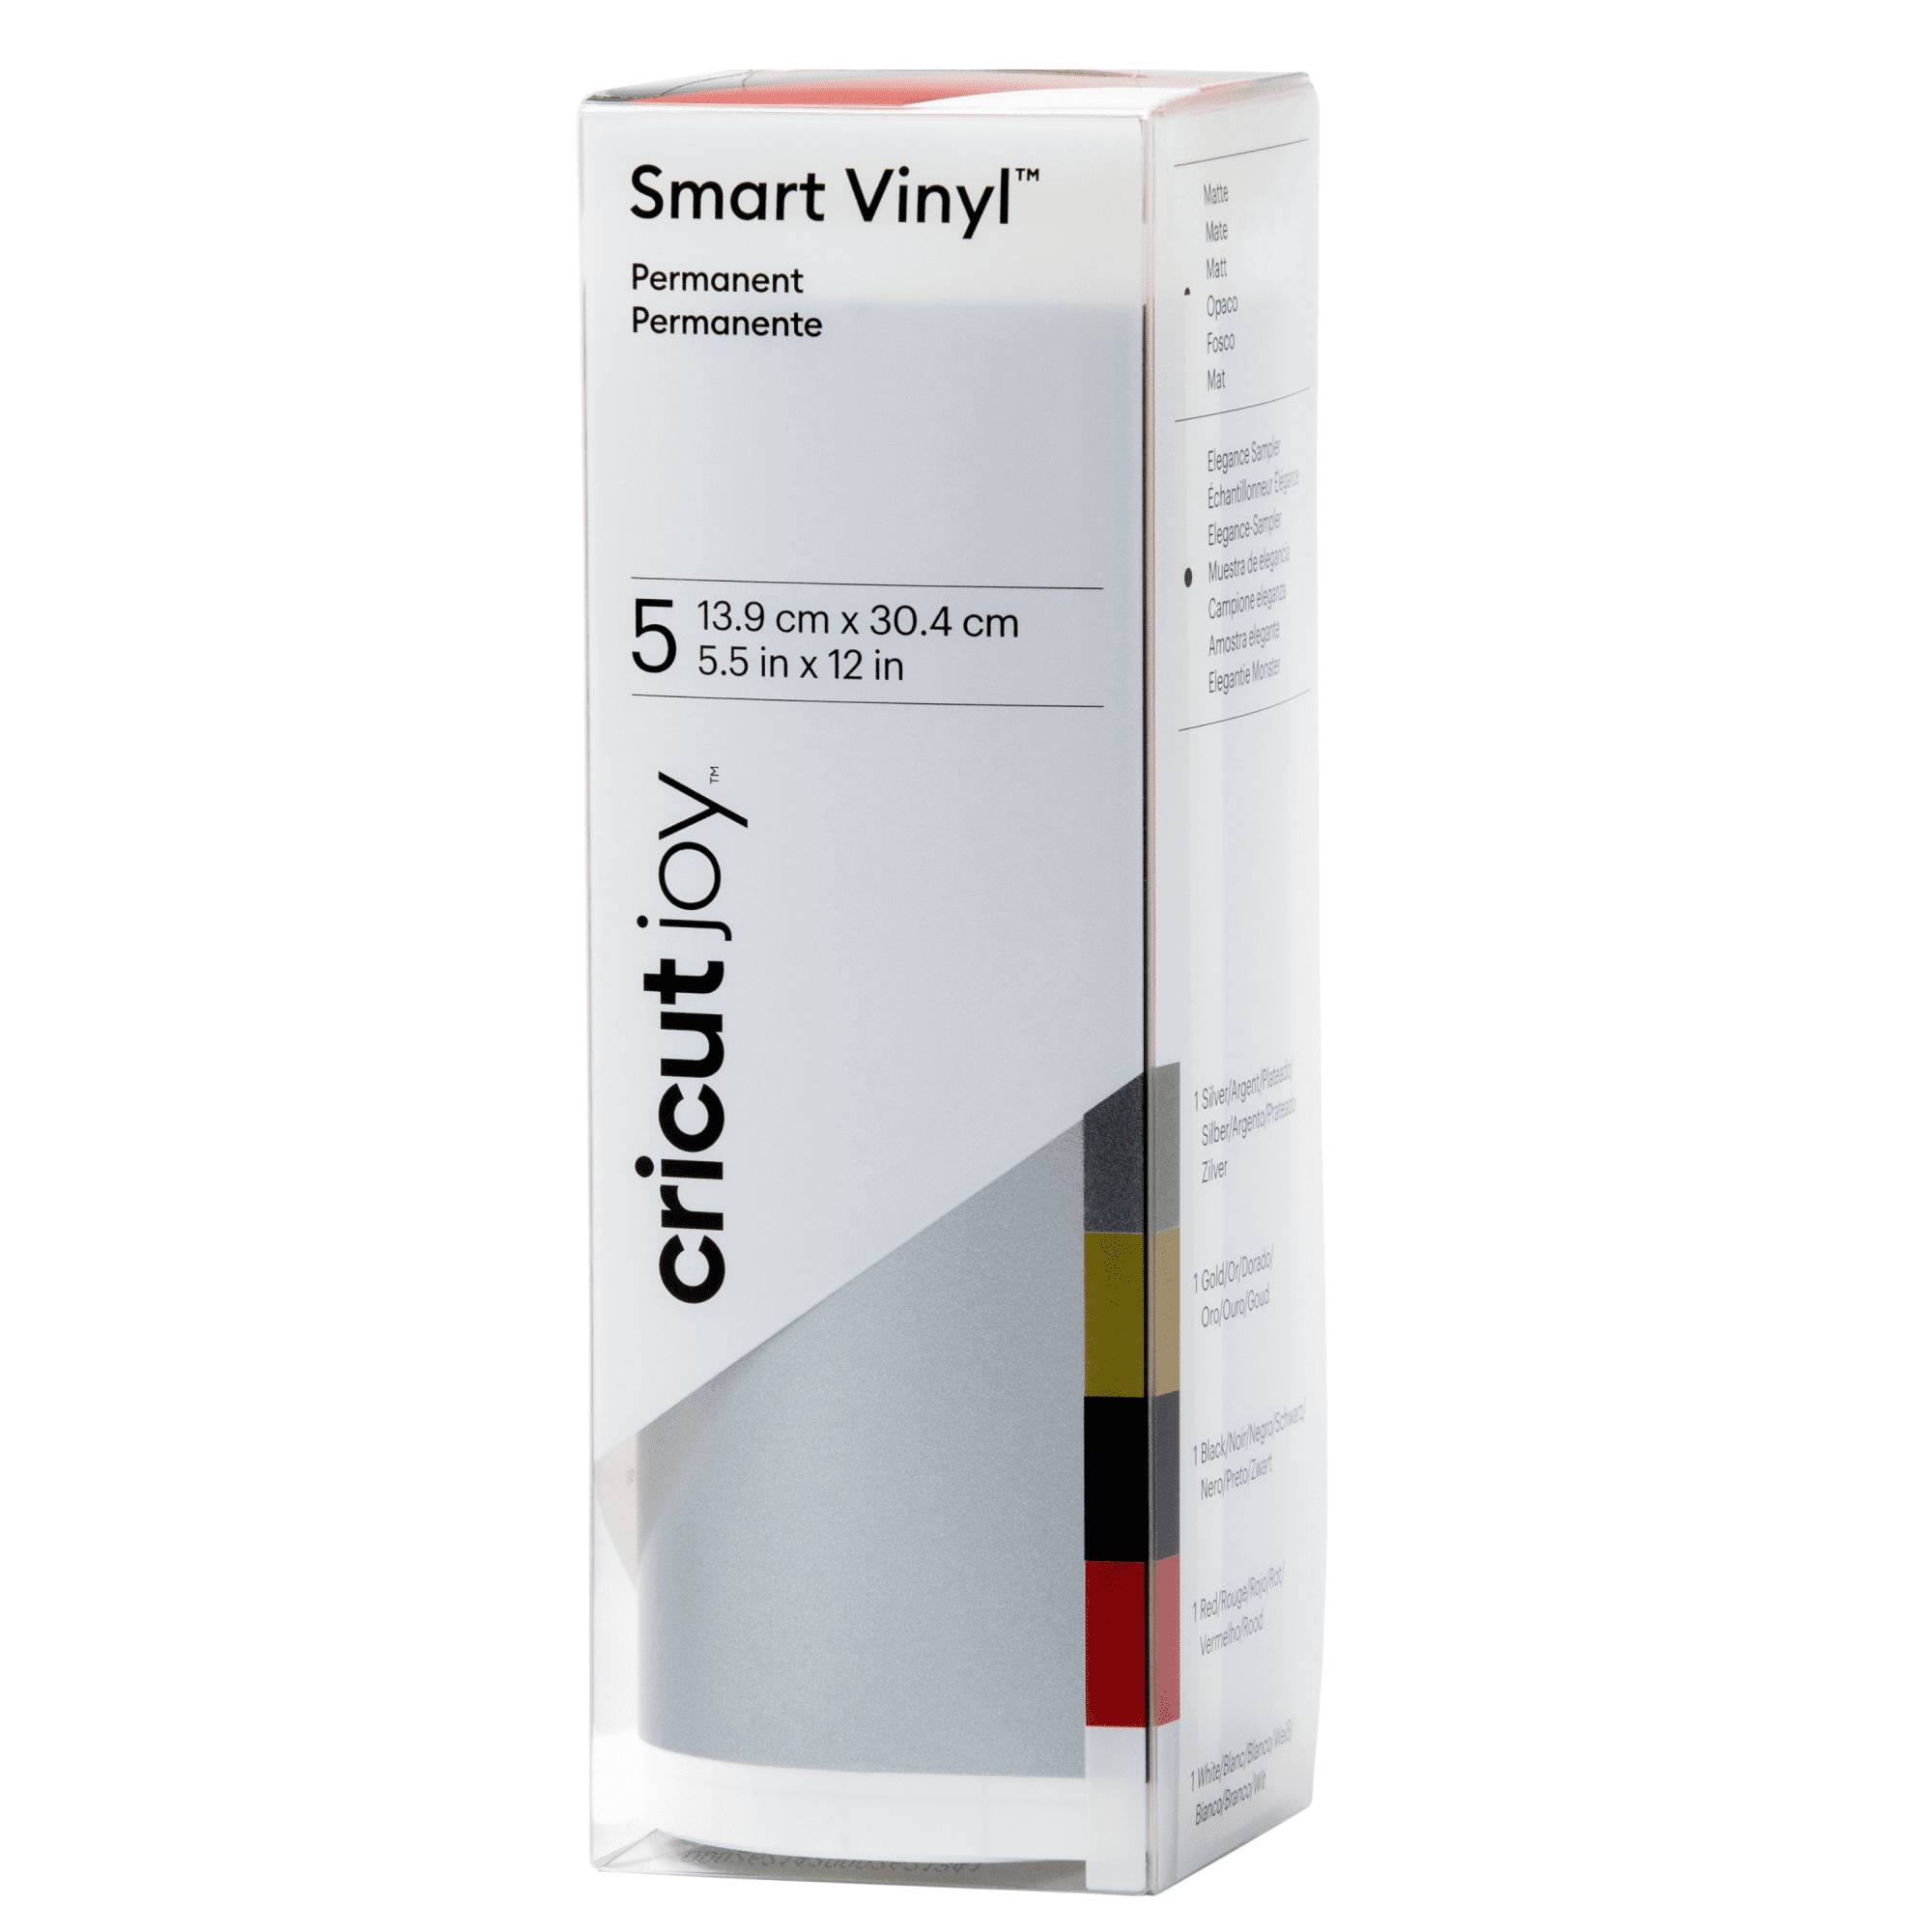 Cricut Smart Vinyl Sampler | Permanent | 3 ft | Red White Black